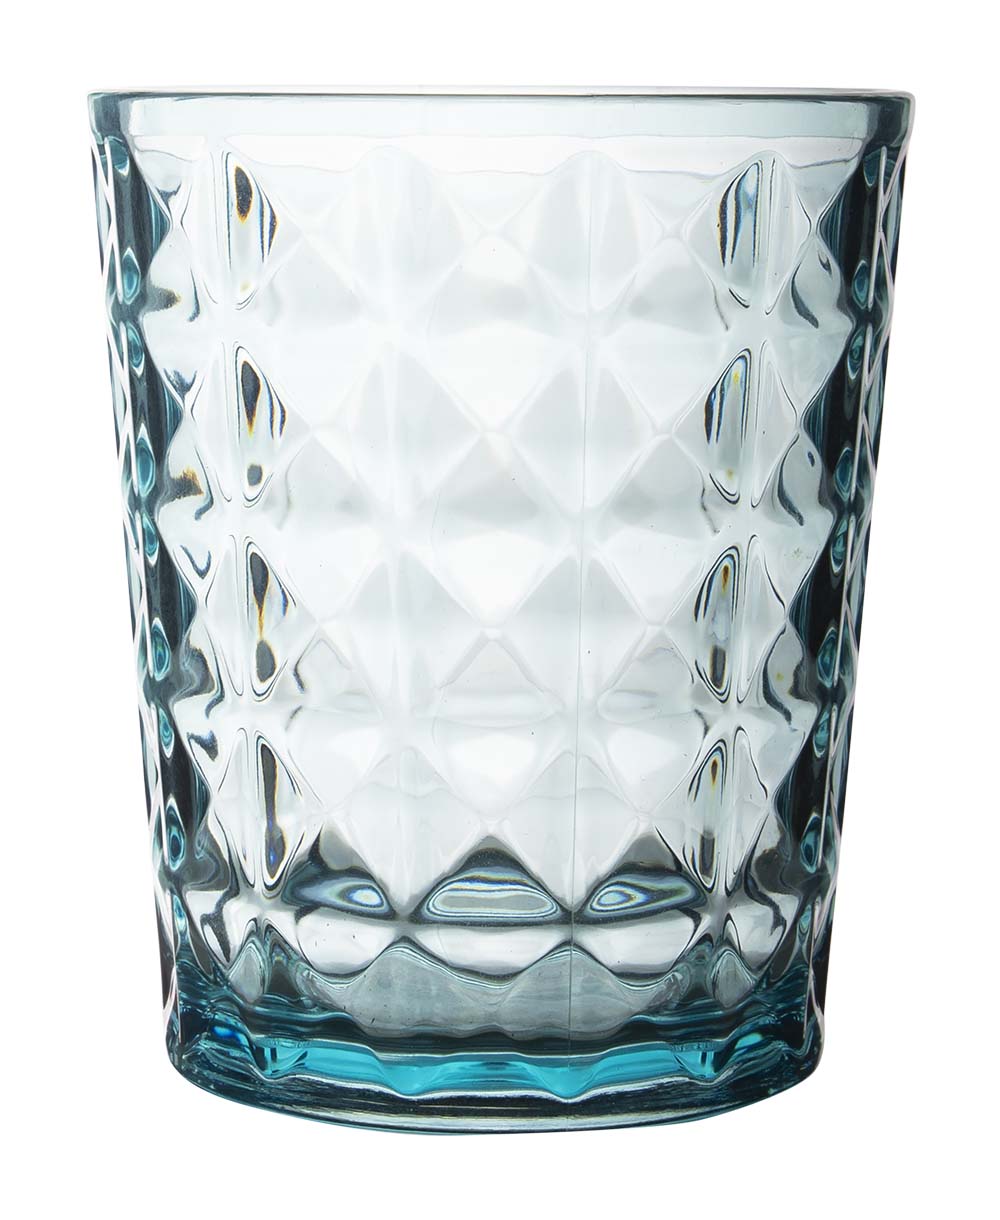 6967966 Een stijlvol turquoise kleurig waterglas uit de Stone line collectie. Vrijwel onbreekbaar door hoogwaardig SAN materiaal. Bestaat uit een set van 2 stuks. Zeer gemakkelijk te reinigen en langdurig te gebruiken, wat het glas erg duurzaam maakt. Daarnaast is het waterglas erg lichtgewicht en krasbestendig. Inhoud: 480 ml.